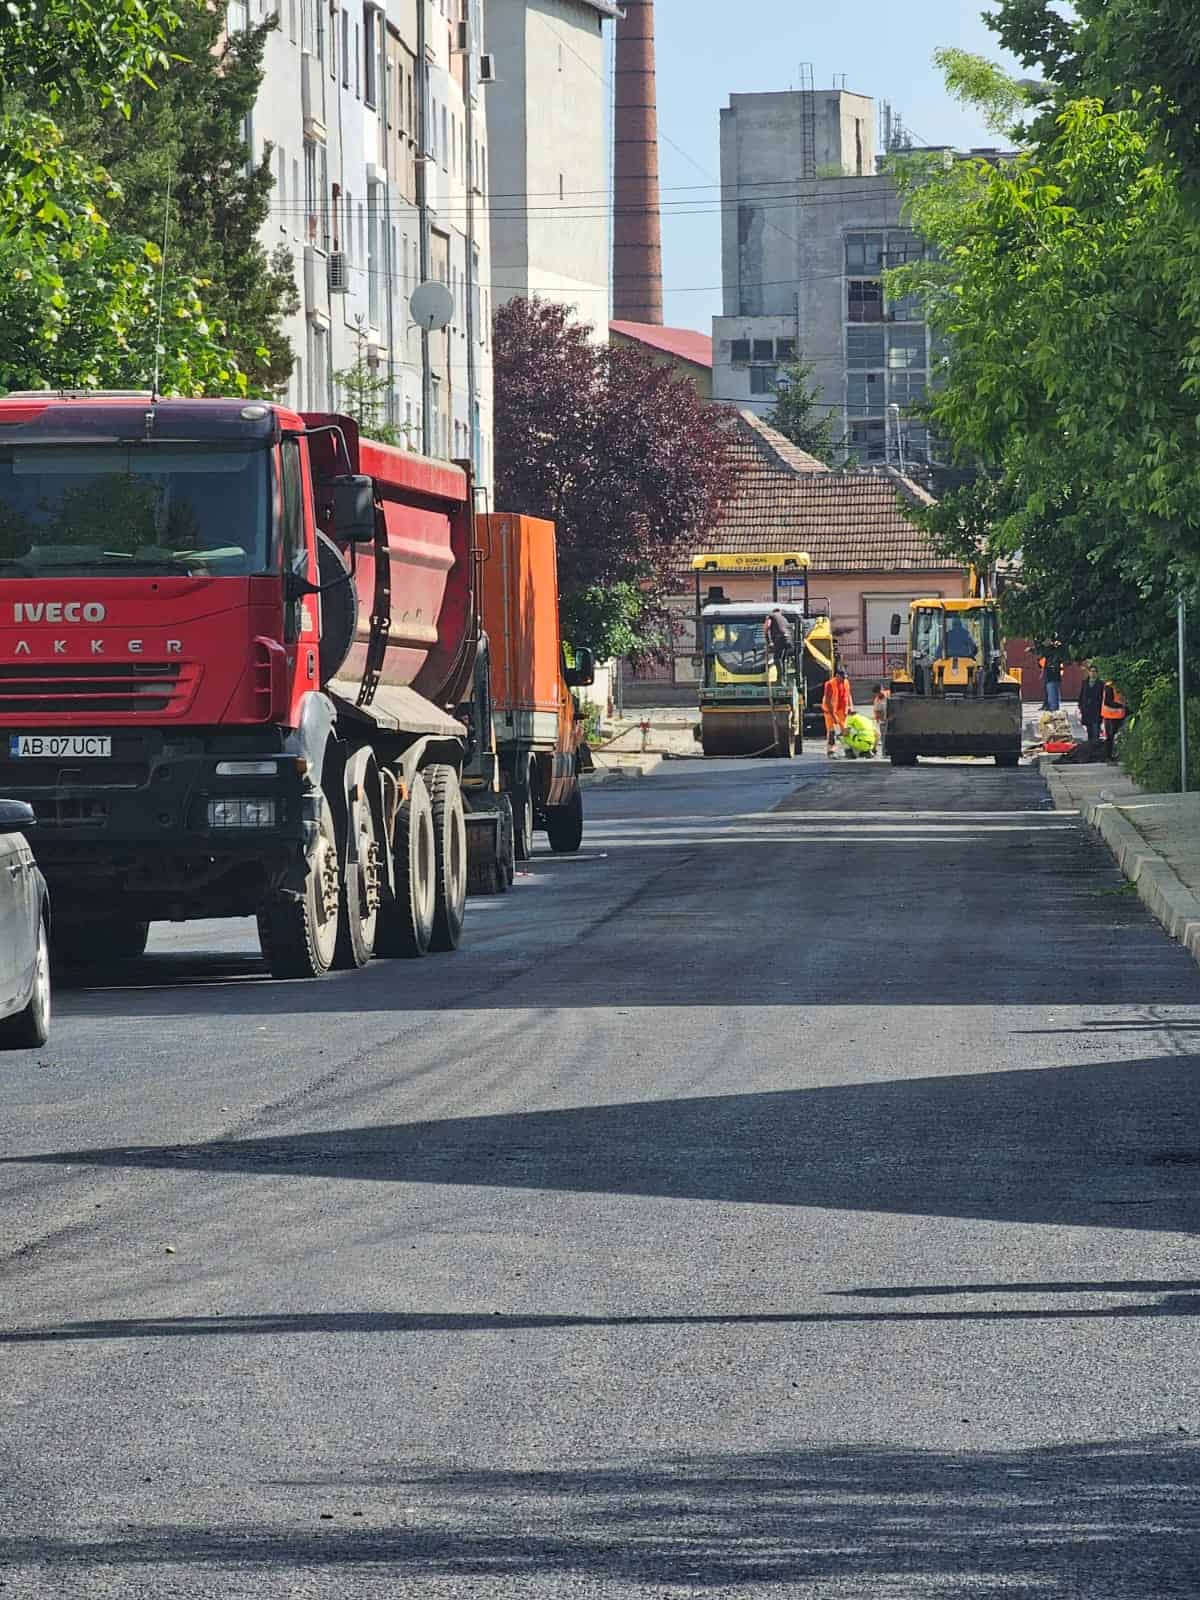 lucrări de asfaltare pe strada someșului din mediaș (foto video)